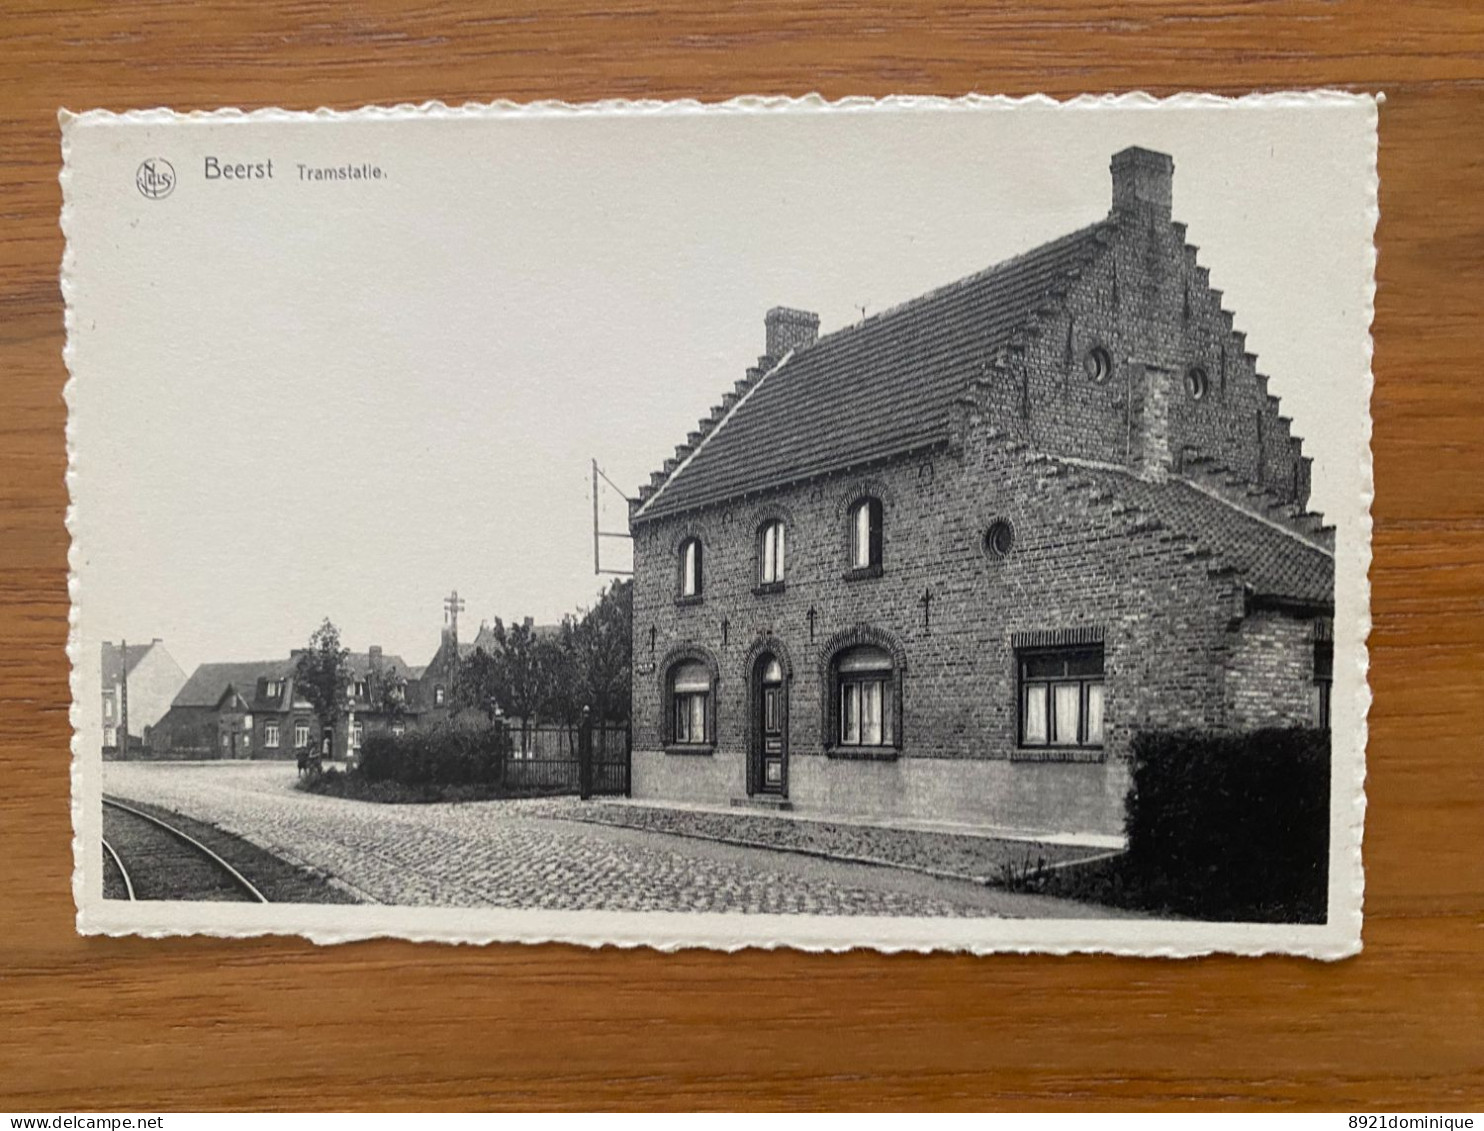 TRAMSTATIE - Beerst ( Edit. : Jos.Vandenberghe-Loncke ) - Diksmuide - Tram Statie Gare Station Bahnhof - Diksmuide